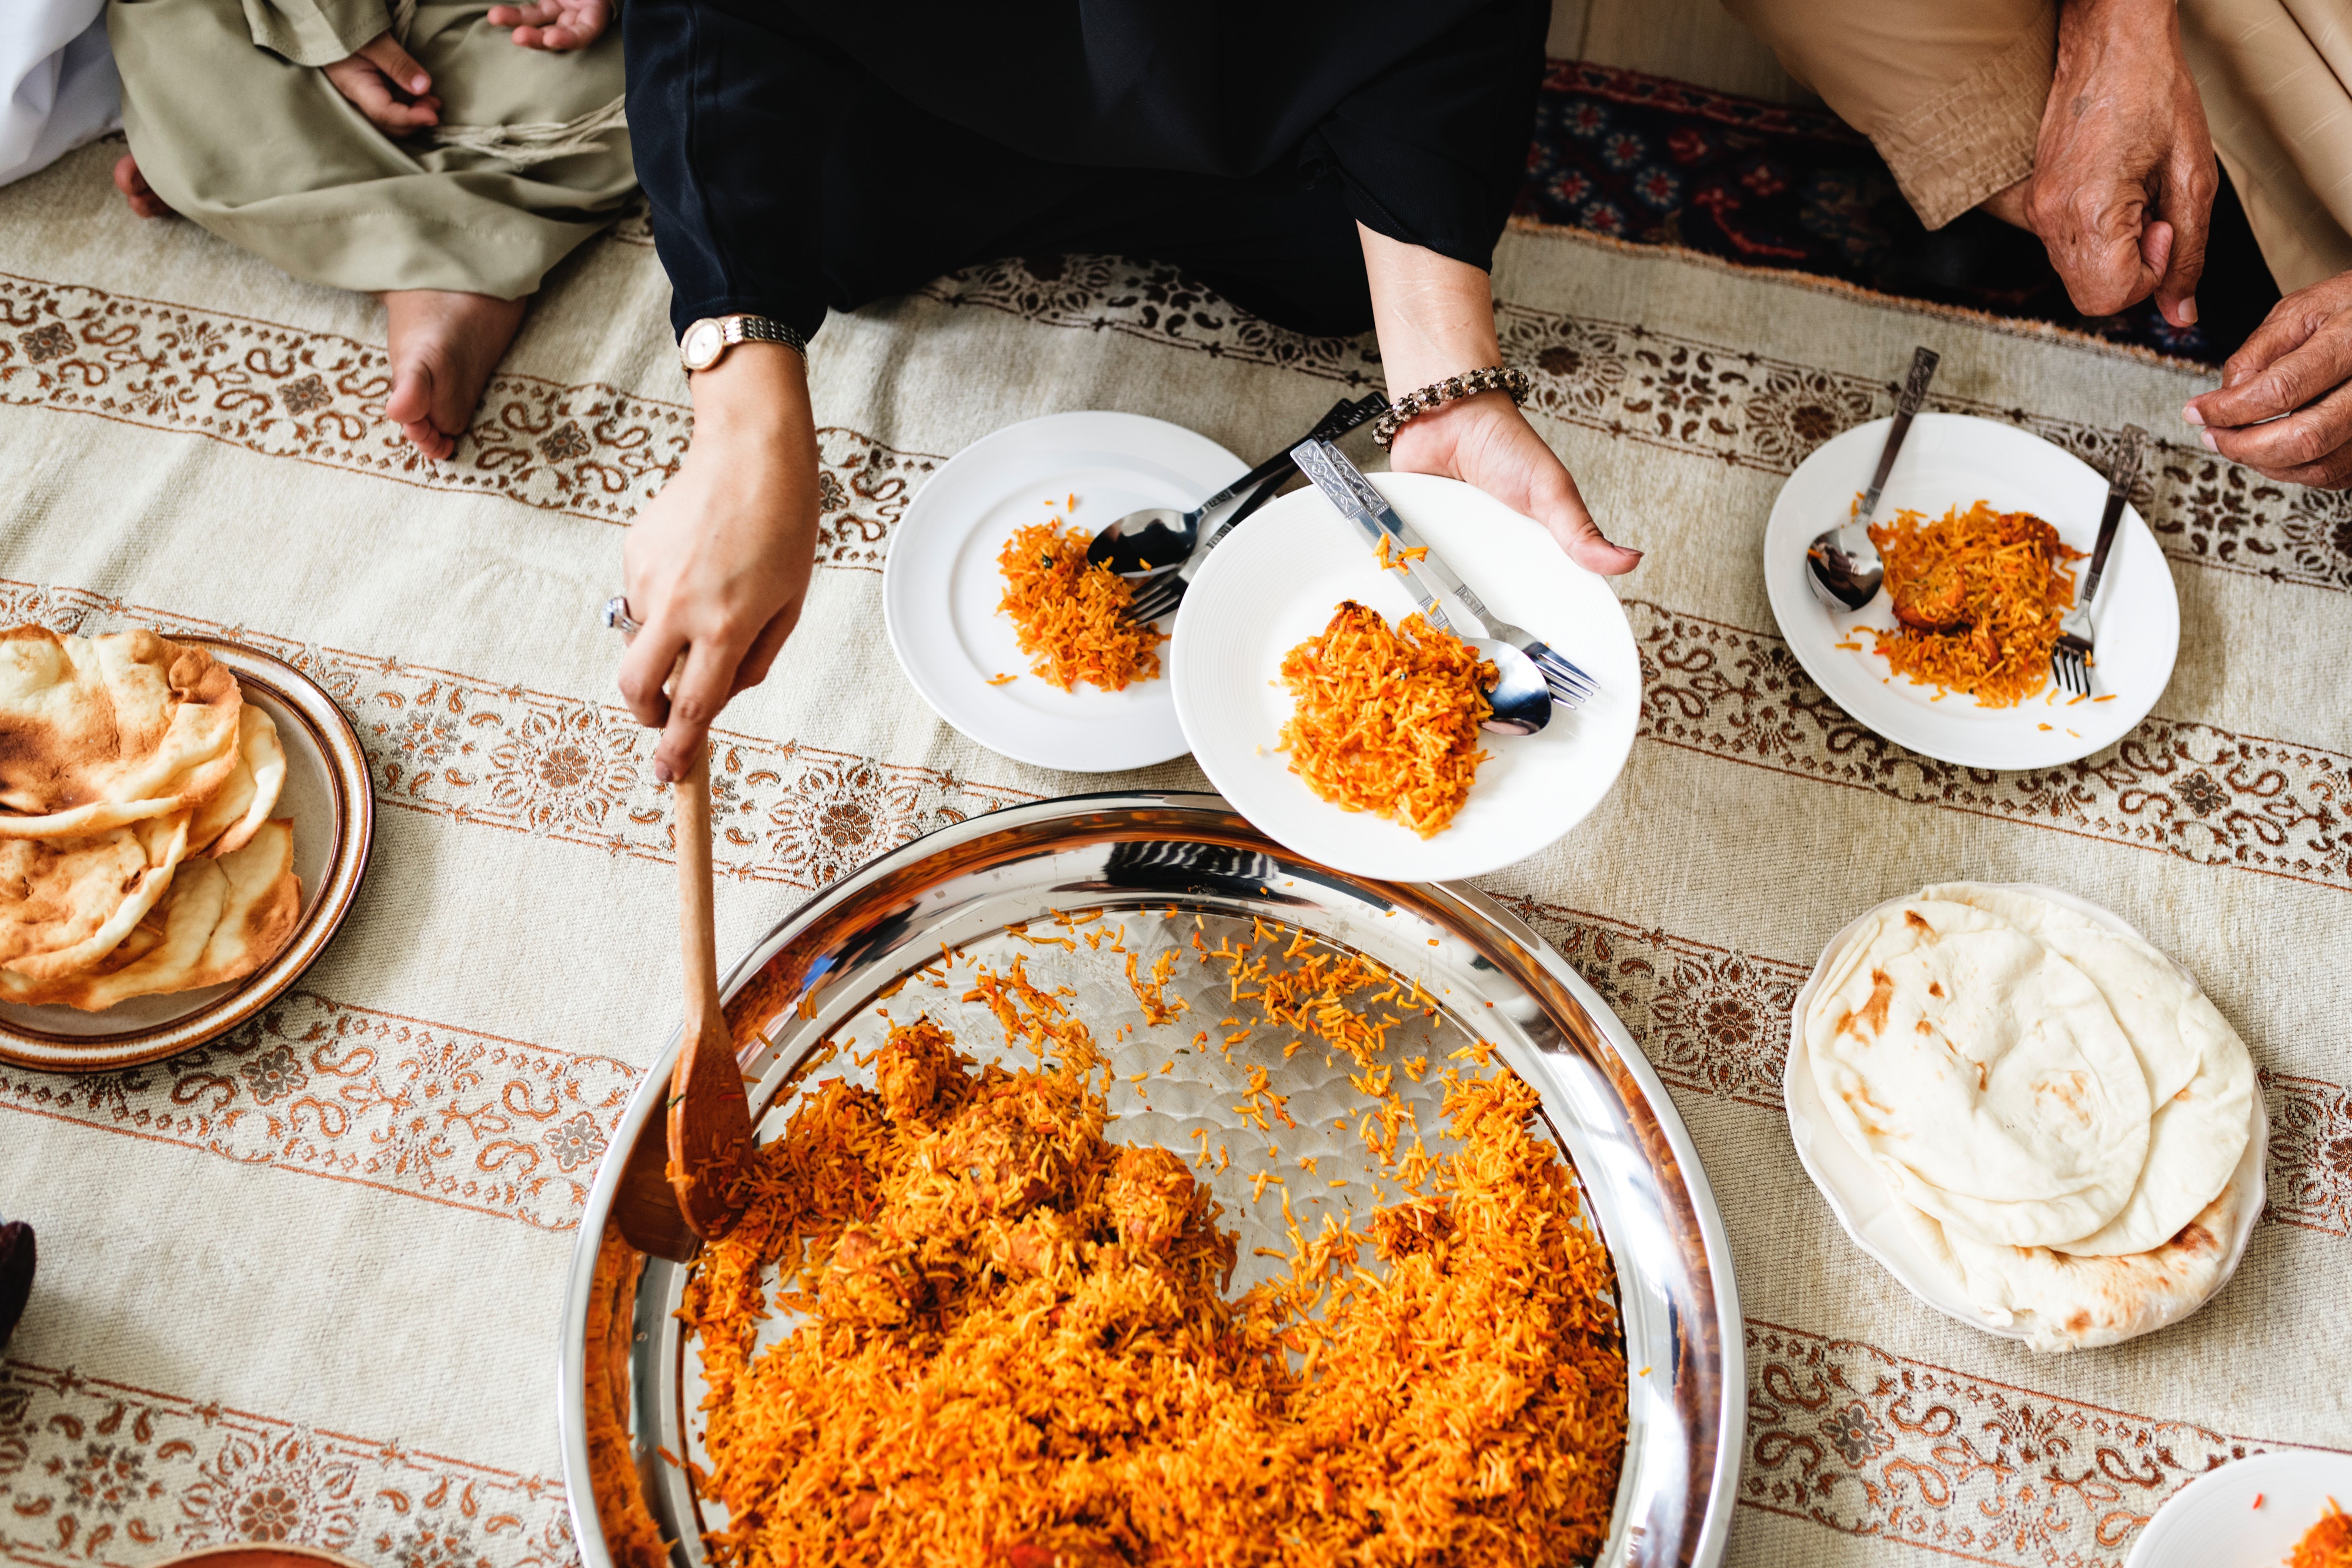 Sharing food - Arabic meal